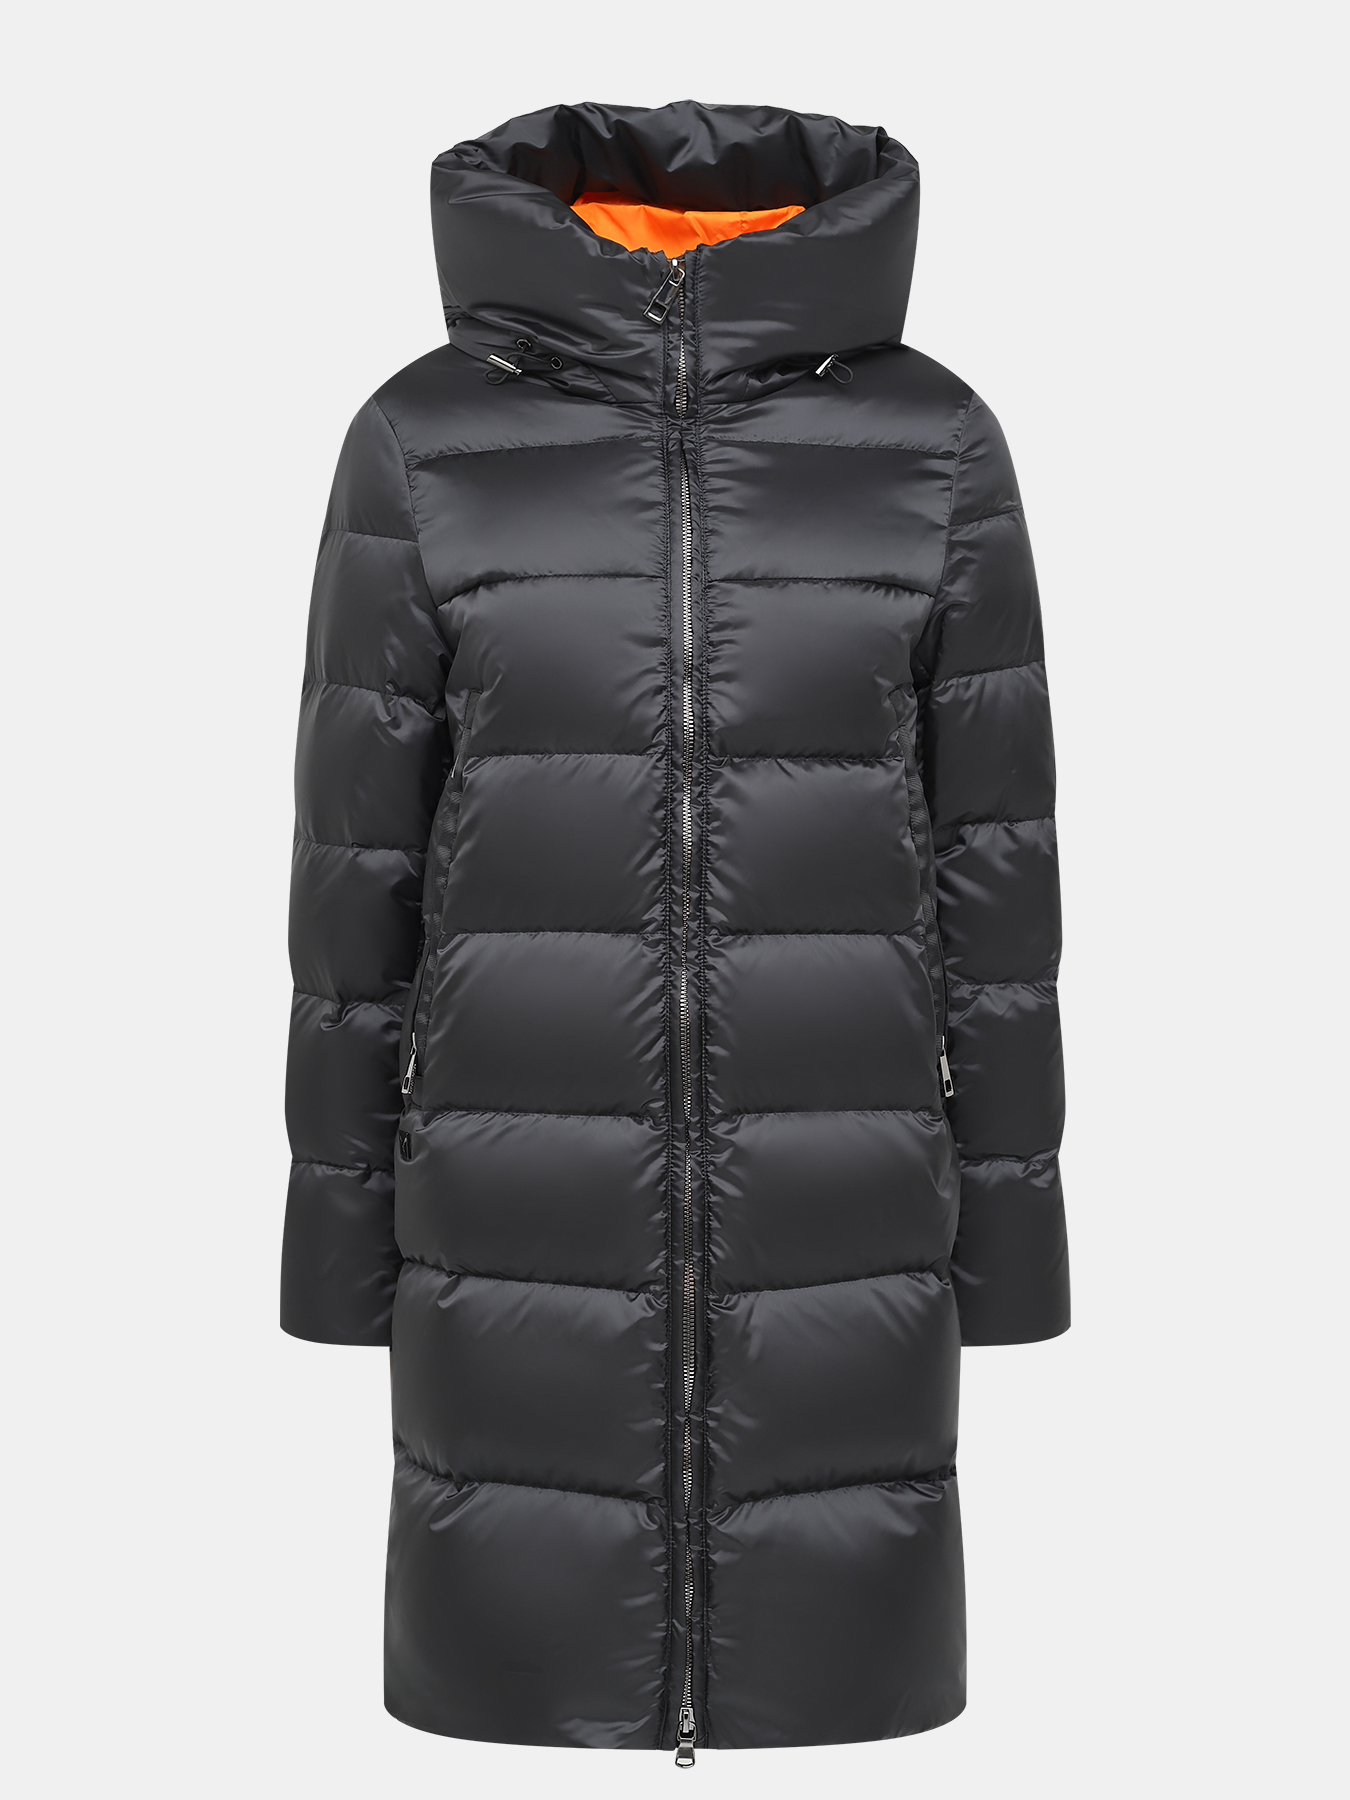 Пальто зимнее AVI 433595-018, цвет черный, размер 36